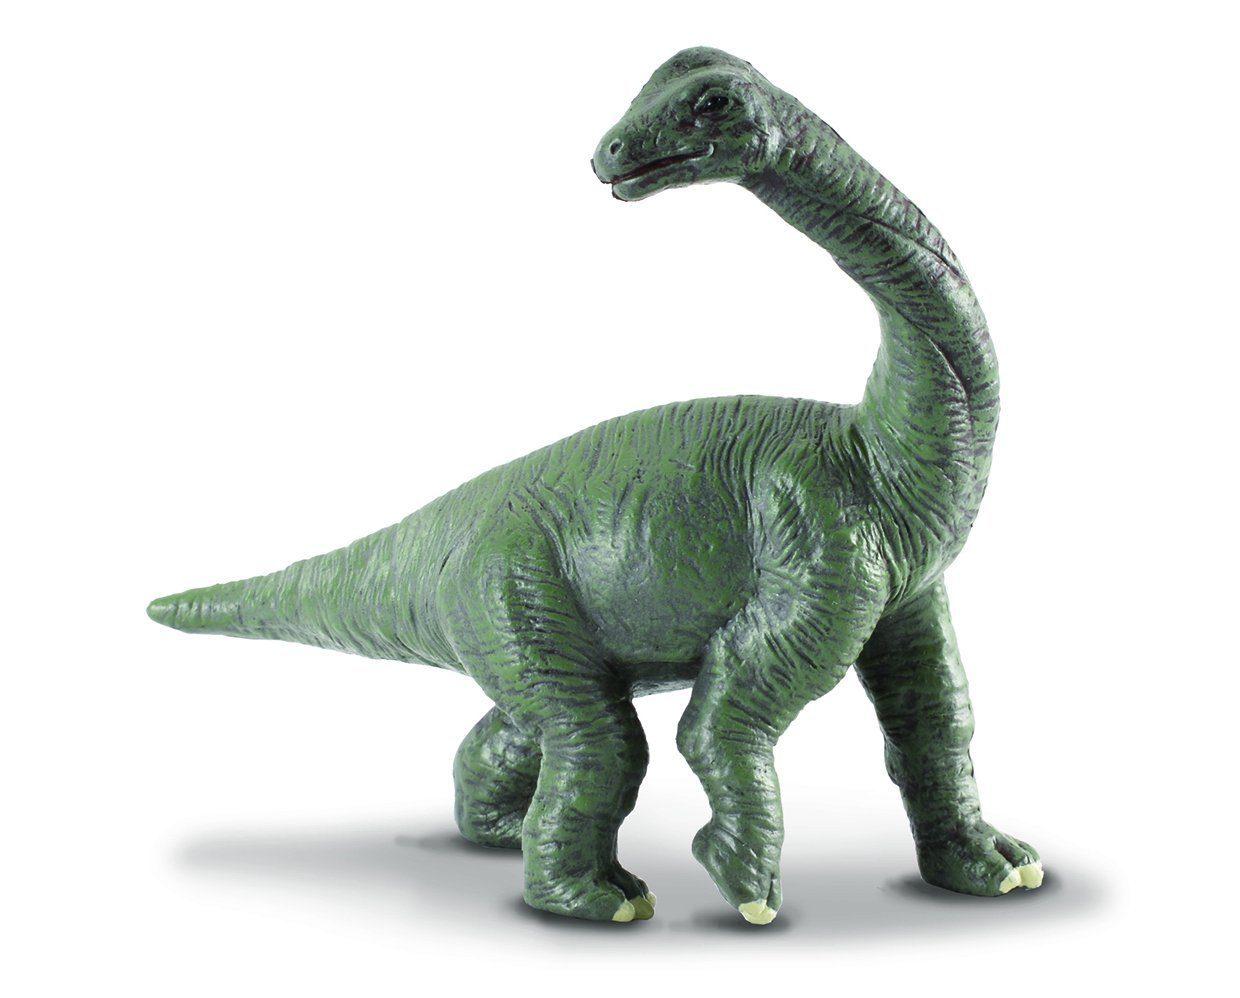 Brachiosaurus Baby